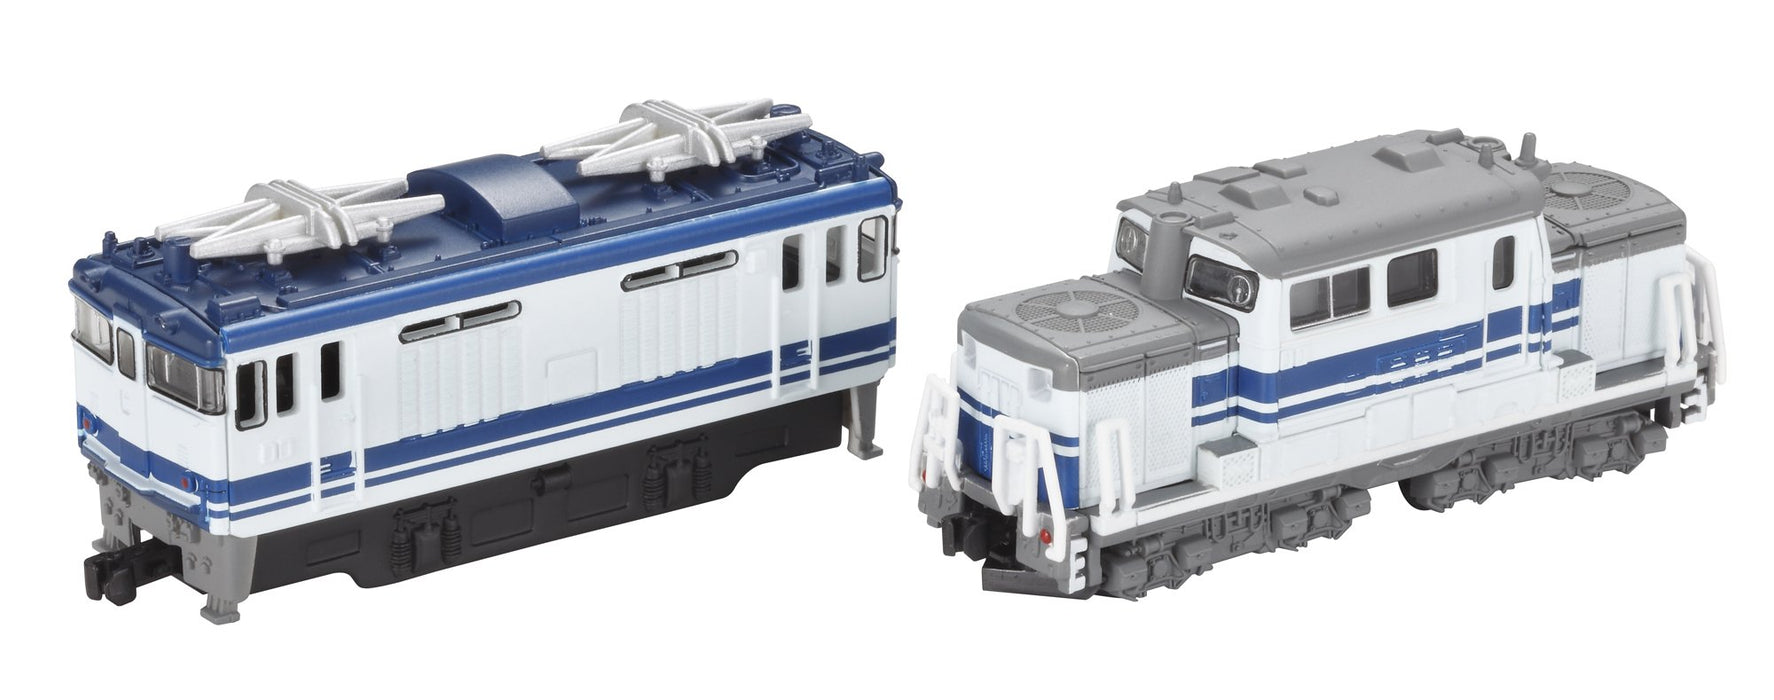 BANDAI B-Train Shorty Locomotive Type Dd51 &amp; Type Ef64 Échelle N